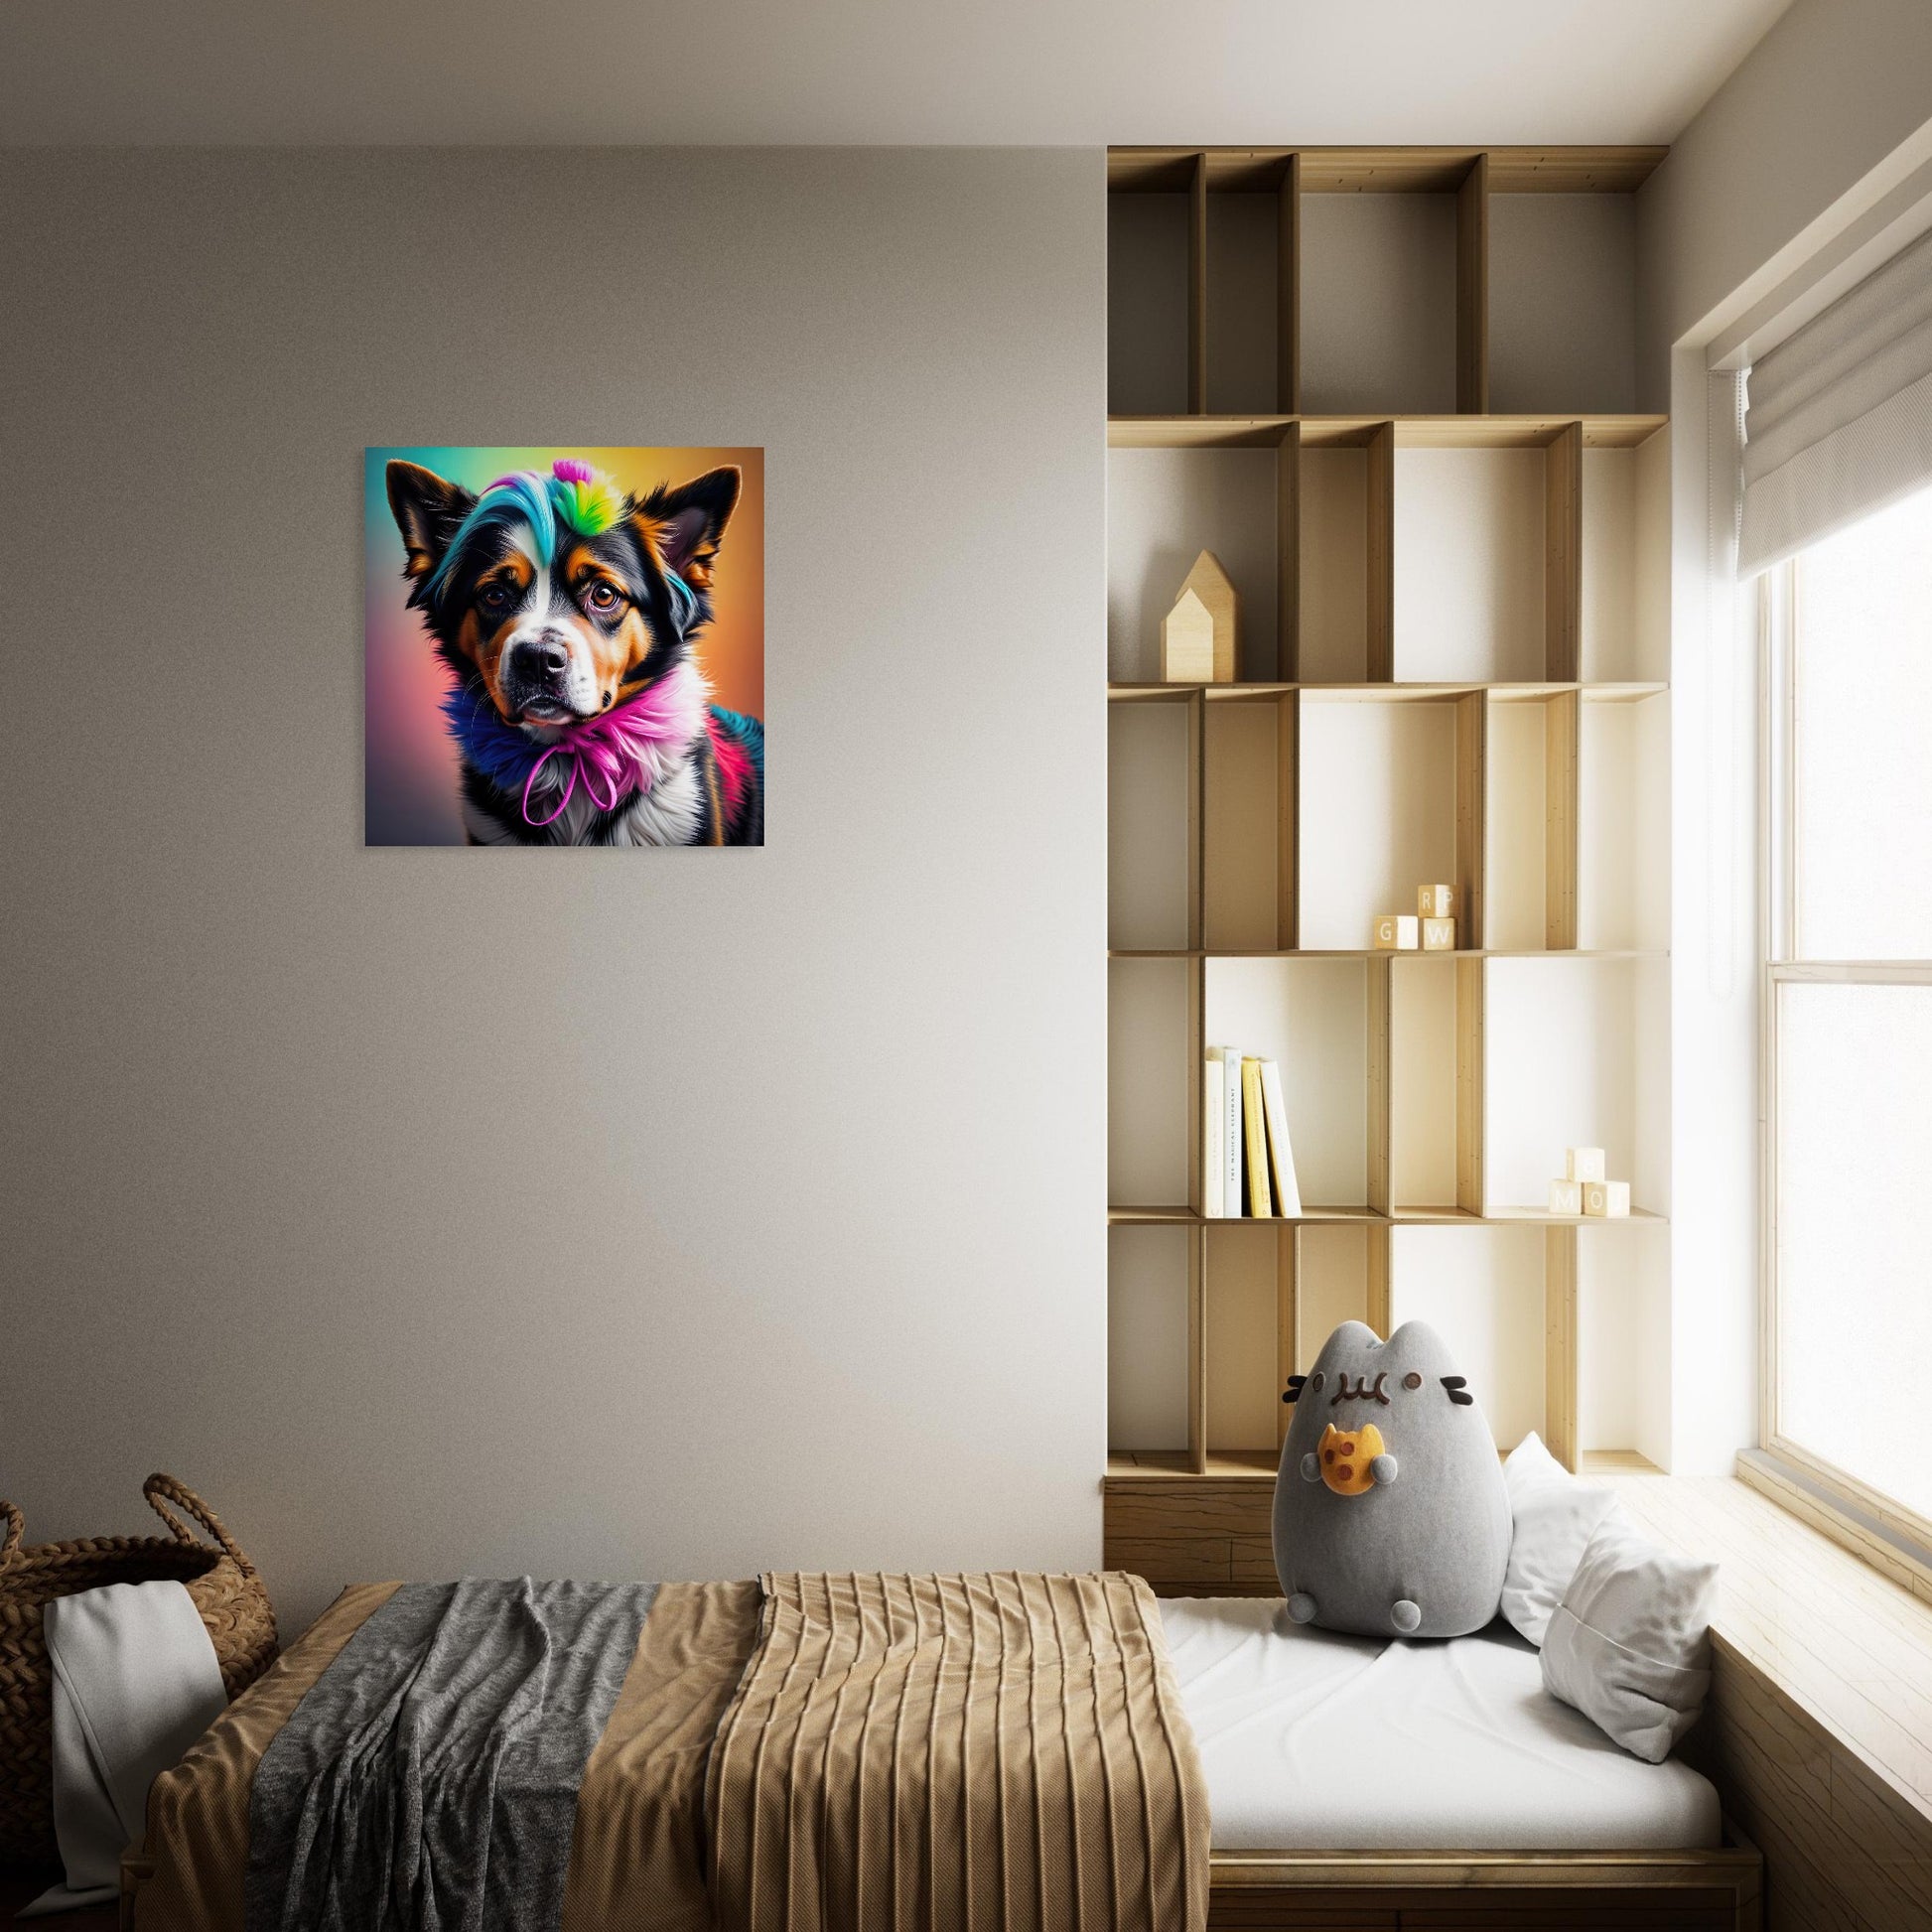 Moderner Forex-Druck - Der Hund, der Farben liebt - 3D-Stil, KI-Kunst - RolConArt, Tiere - Kreative Vielfalt, 